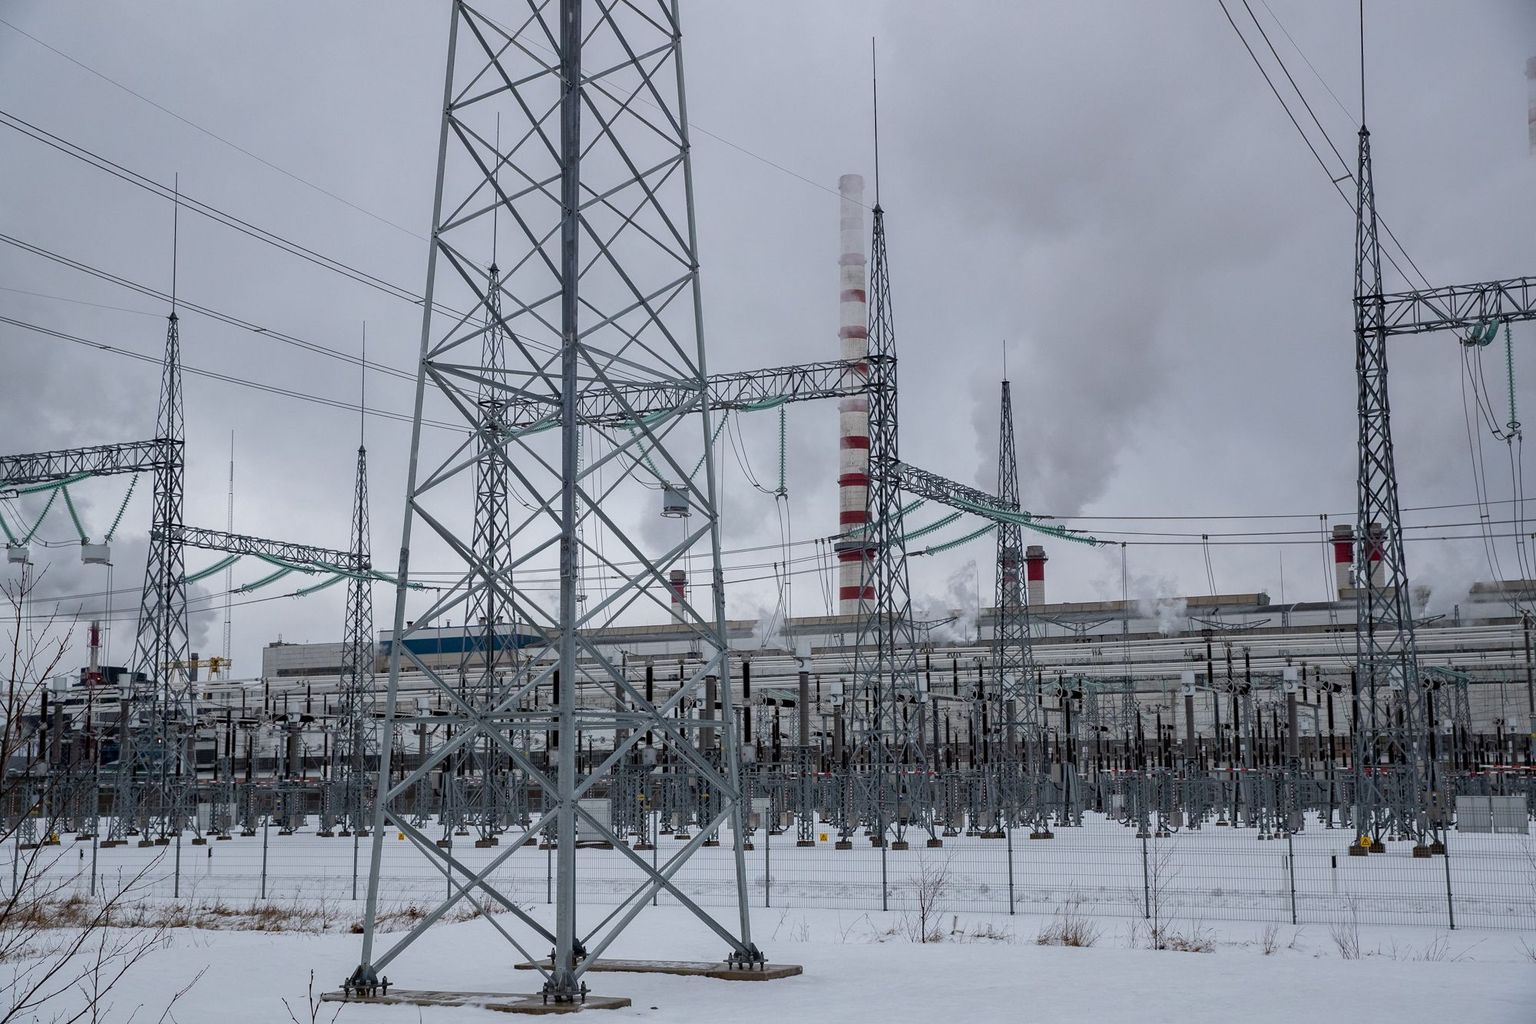 Mitte ainult Auvere: Eesti Energia lükkas tasakesi veel suuri võimsusi võrgust välja. Elering, kes peab võrgu stabiilsusega tegelema, ei ole oma riskistsenaariumides ette näinud, et elektrit ei ole.